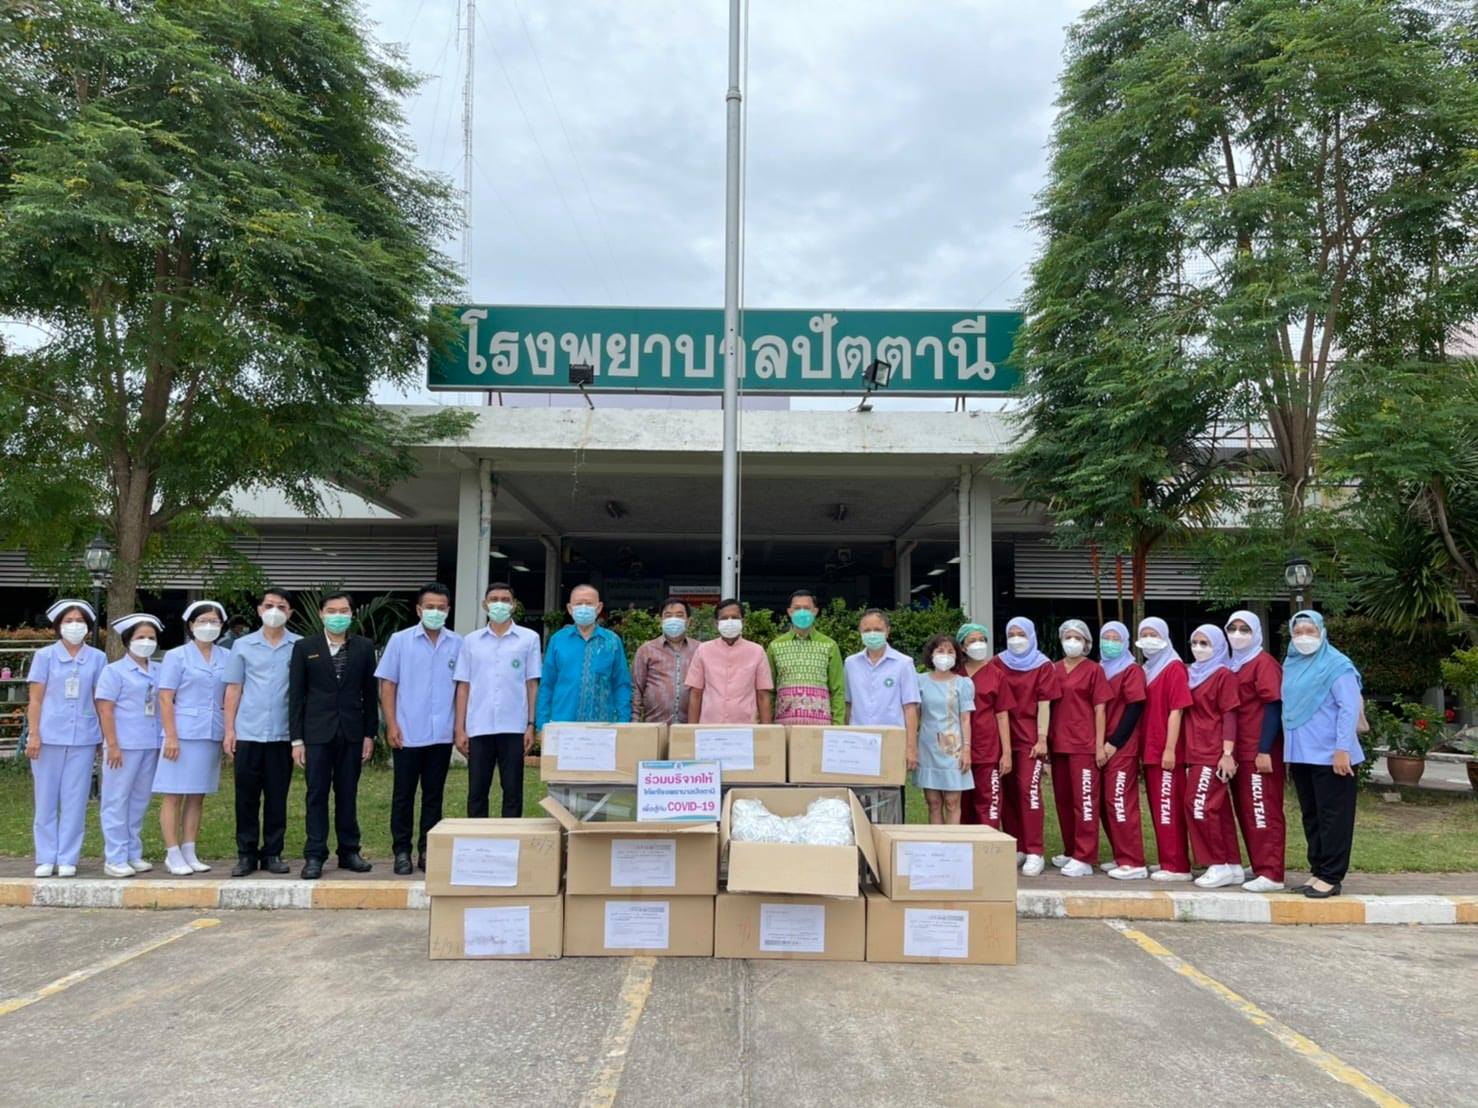 ผู้ว่าราชการจังหวัดปัตตานี ส่งมอบเวชภัณฑ์ทางการแพทย์จากมูลนิธิรักษ์ไทยให้กับ รพ.ปัตตานี